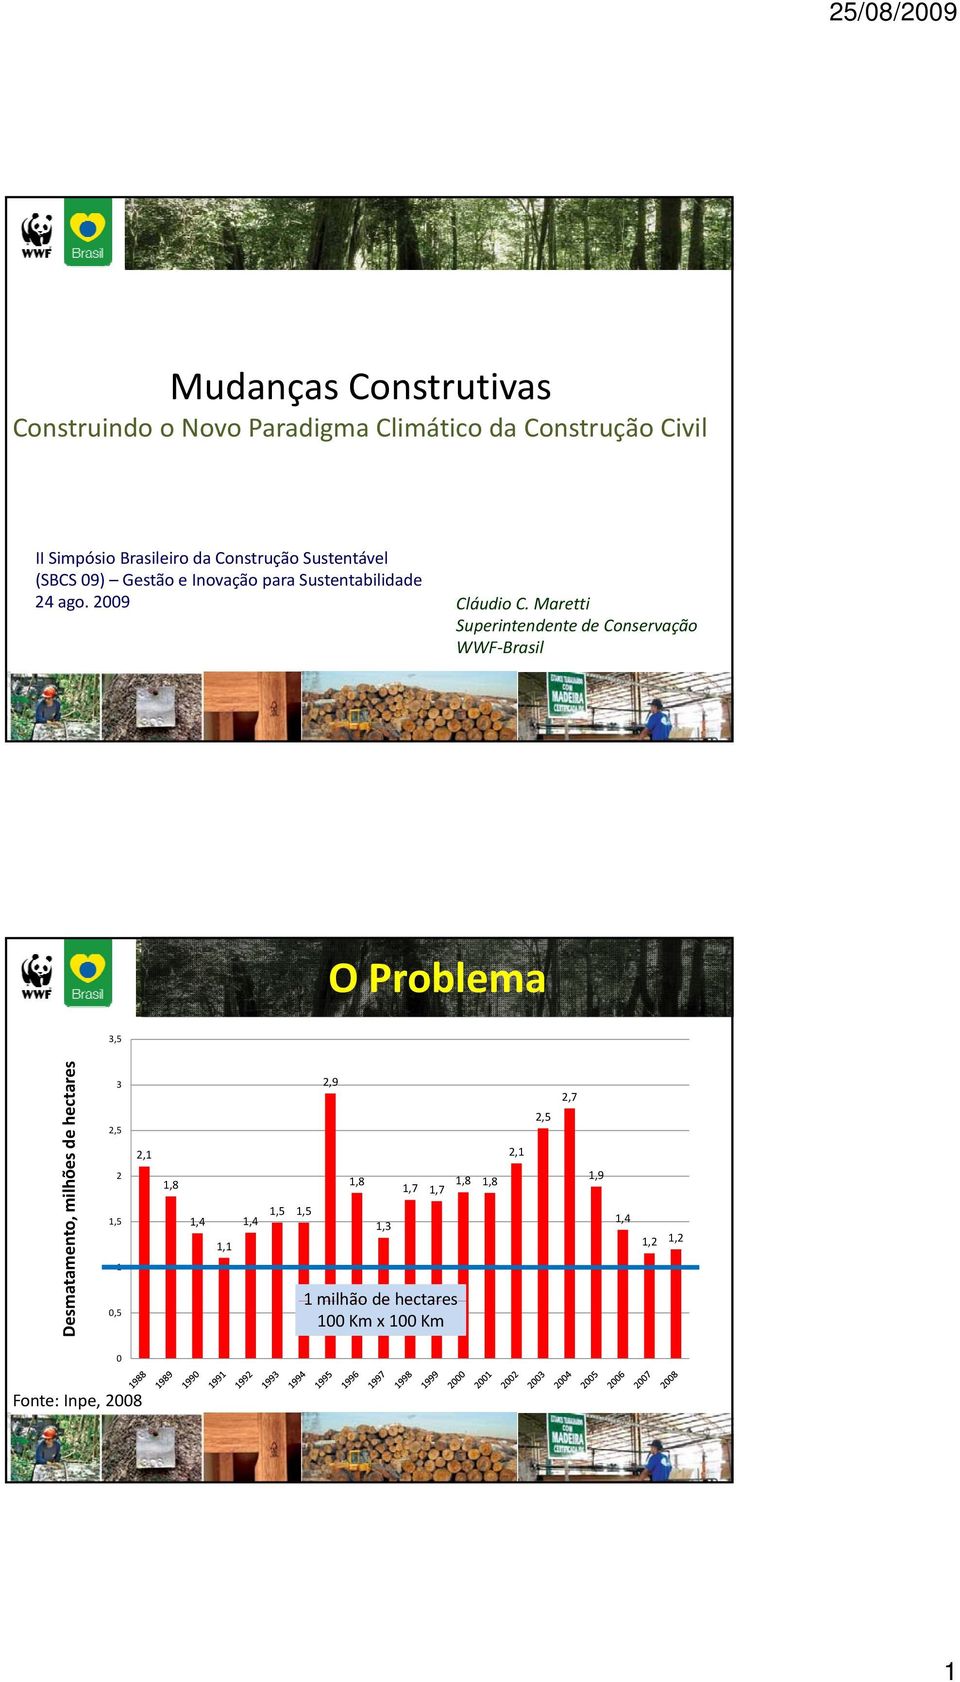 Maretti Superintendente de Conservação WWF Brasil O Problema 3,5 Desm matamento, milhões de hectares x 10000 3 2,5 2 1,5 1